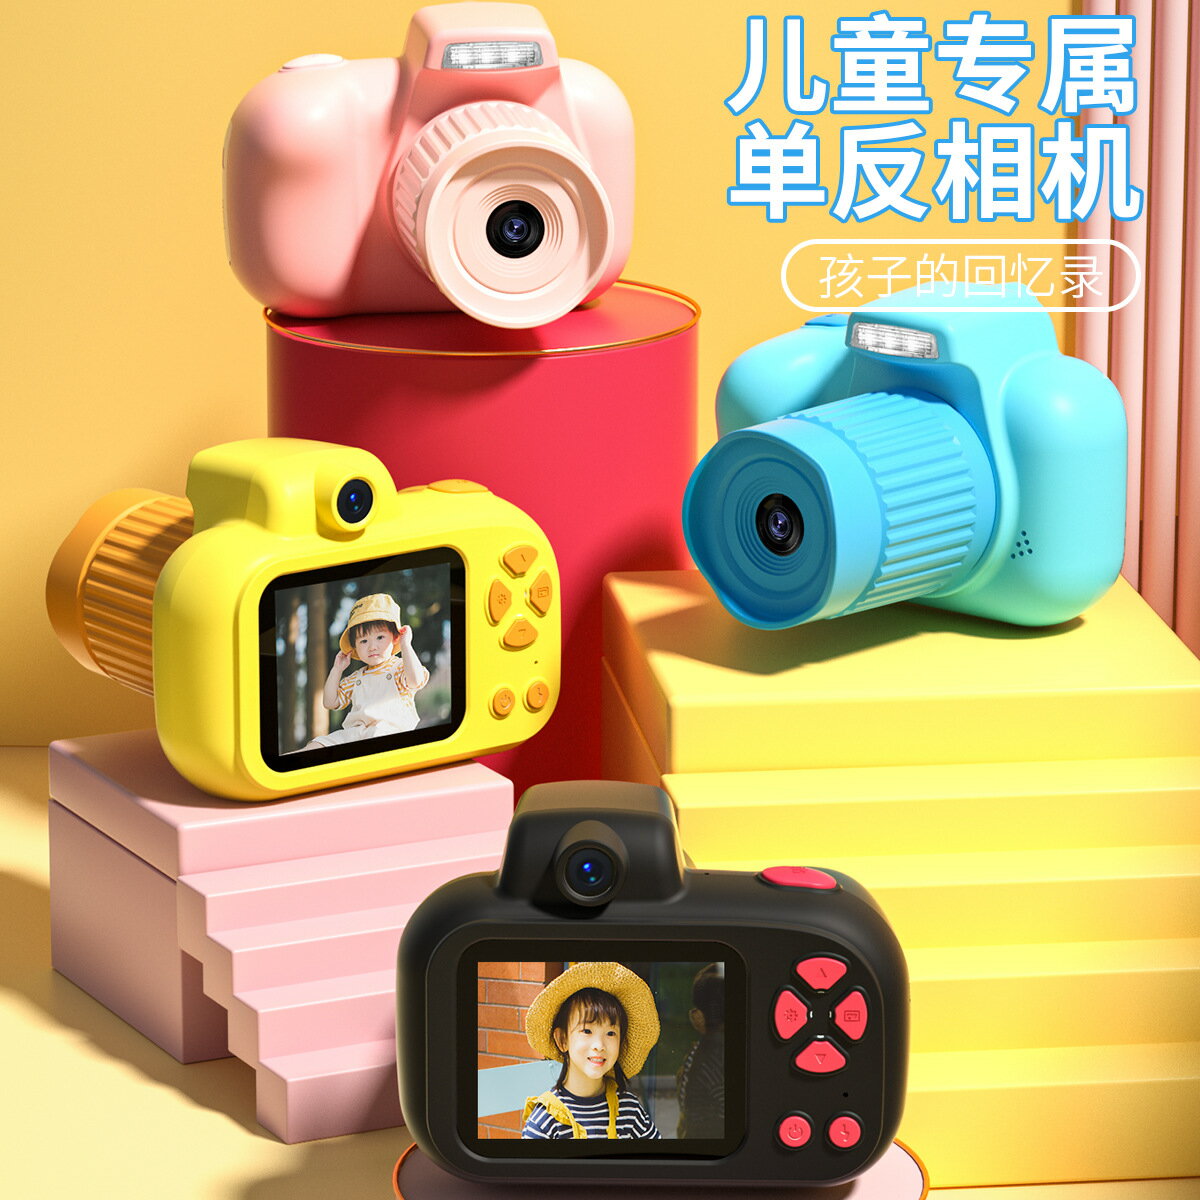 X18兒童相機迷你卡通可拍照長鏡頭高清攝像機禮品玩具私模「限時特惠」